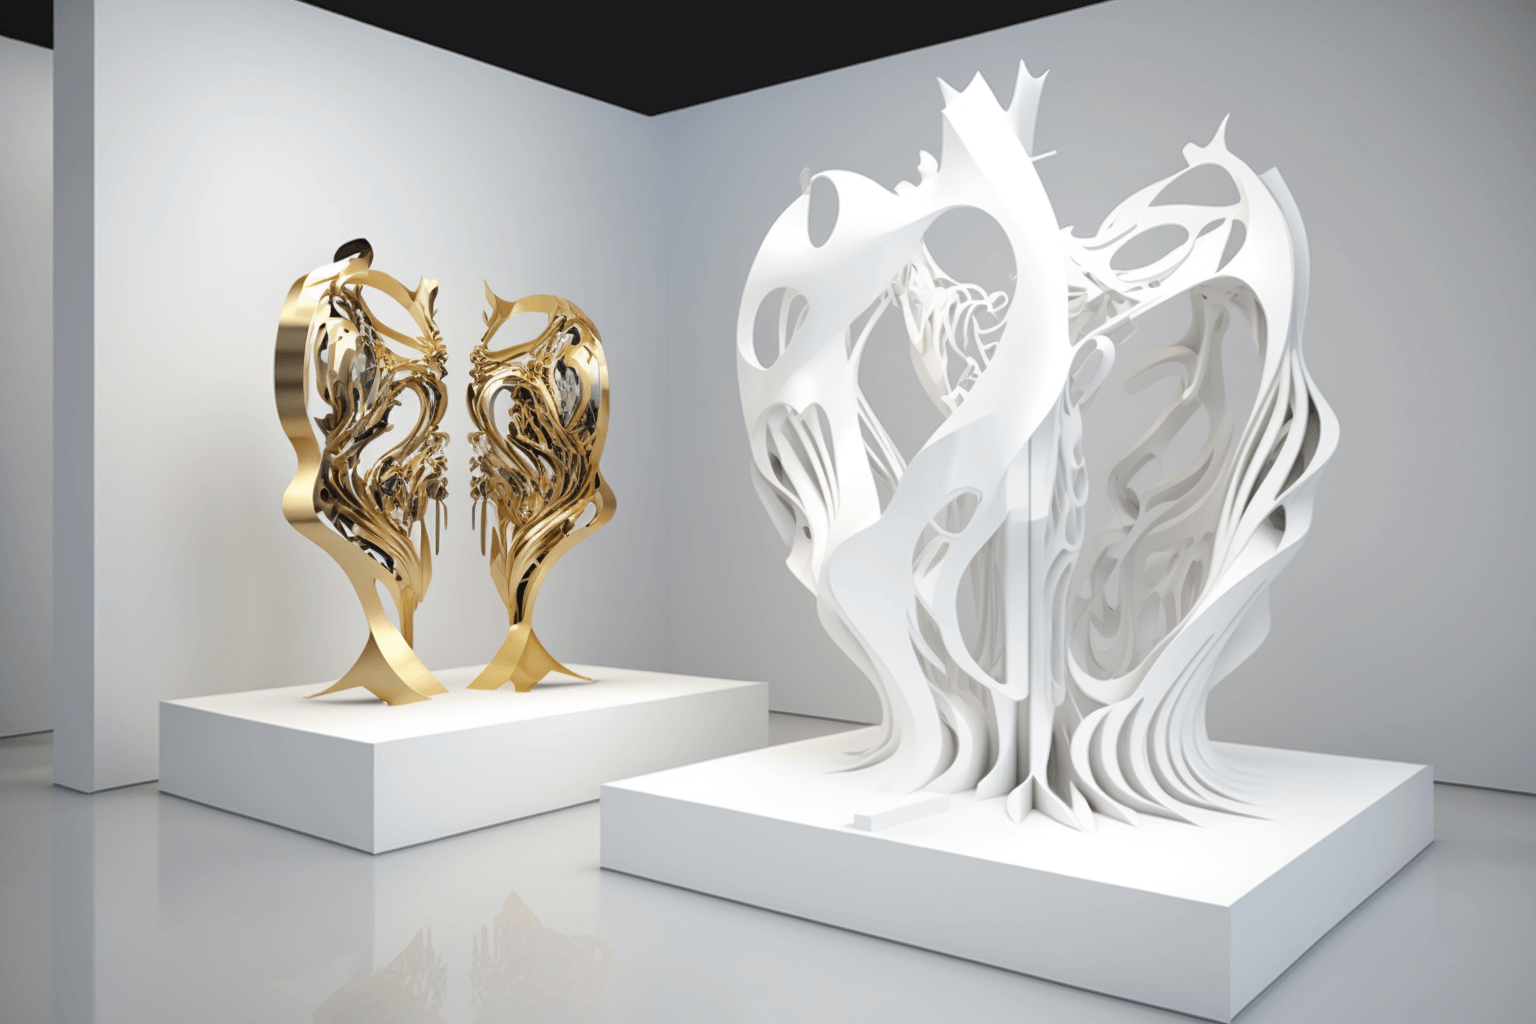 3D generative sculptures